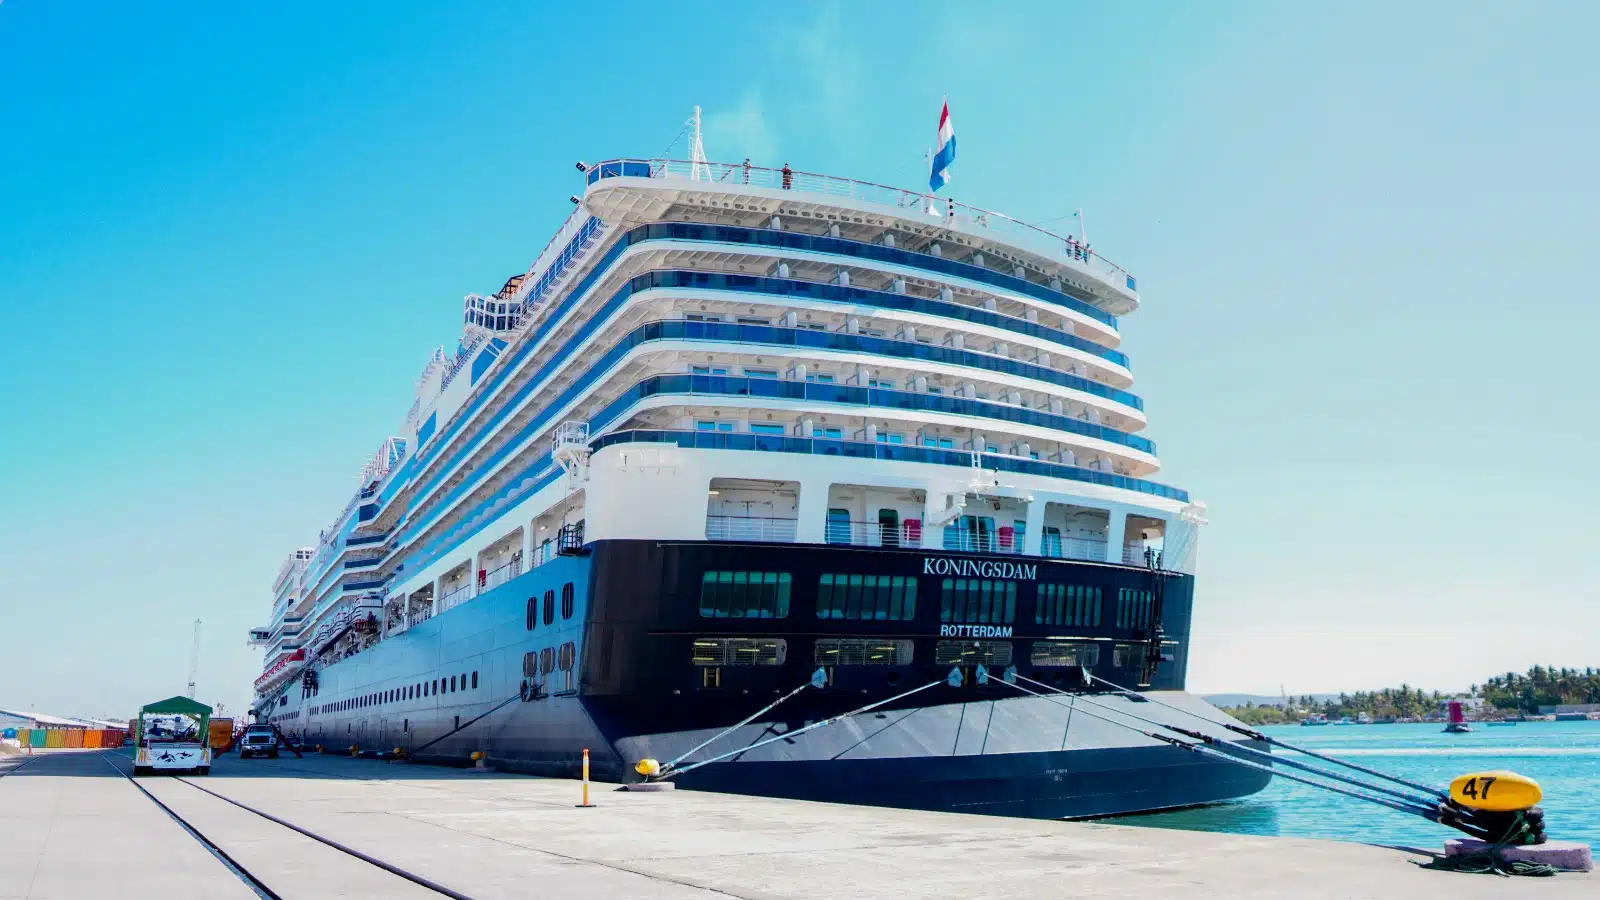 Crucero turístico “Koningsdam” en el puerto de Mazatlán